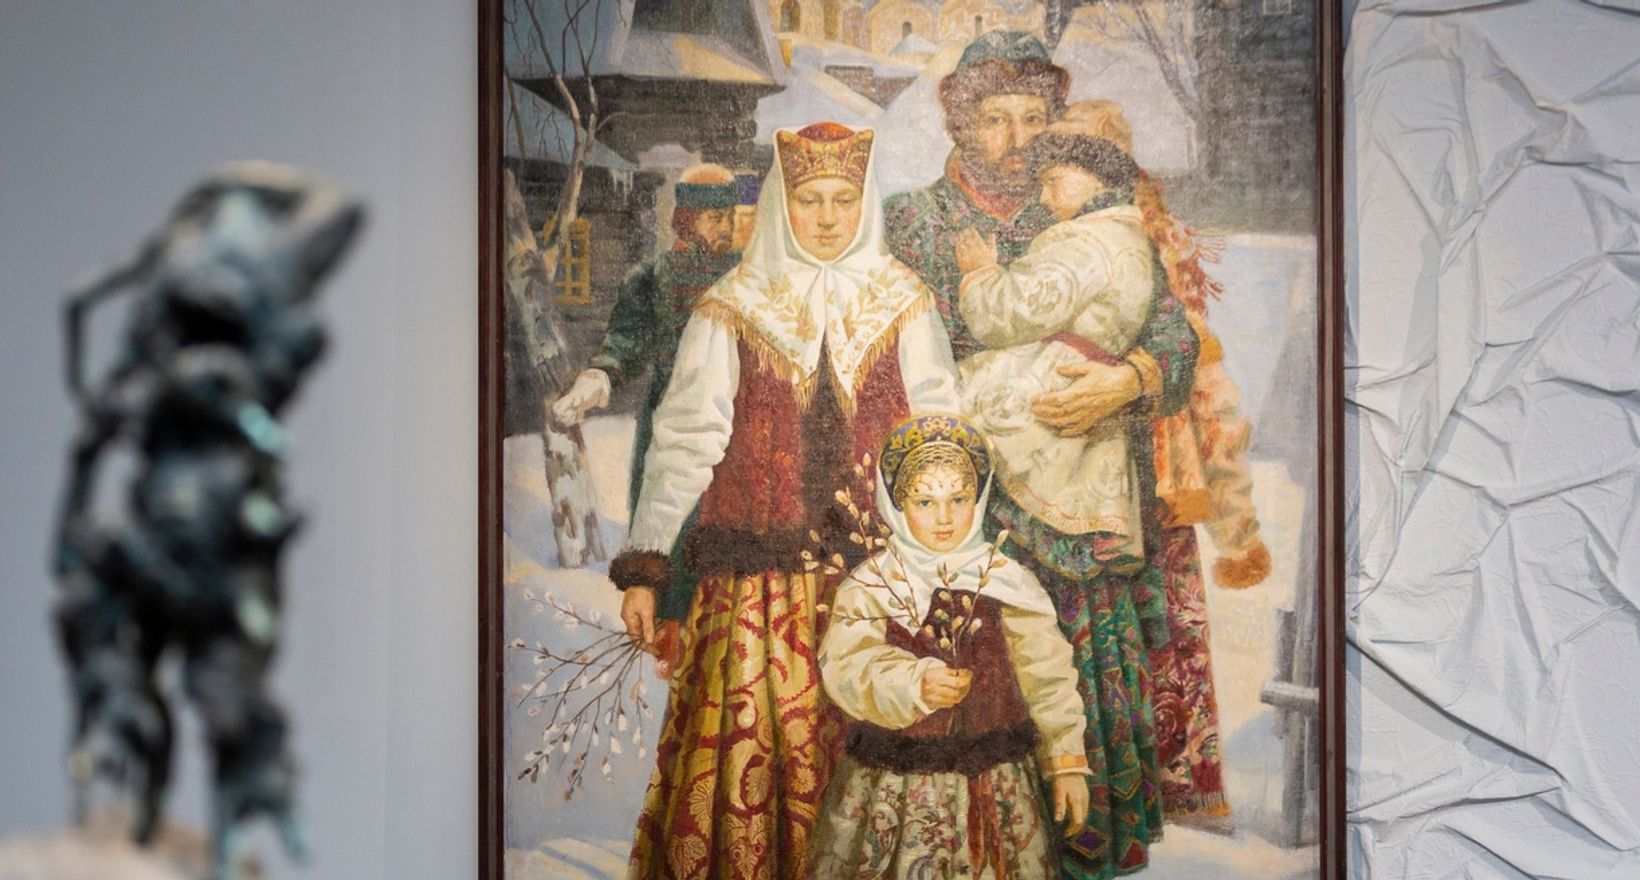 Выставка «Русская зима»